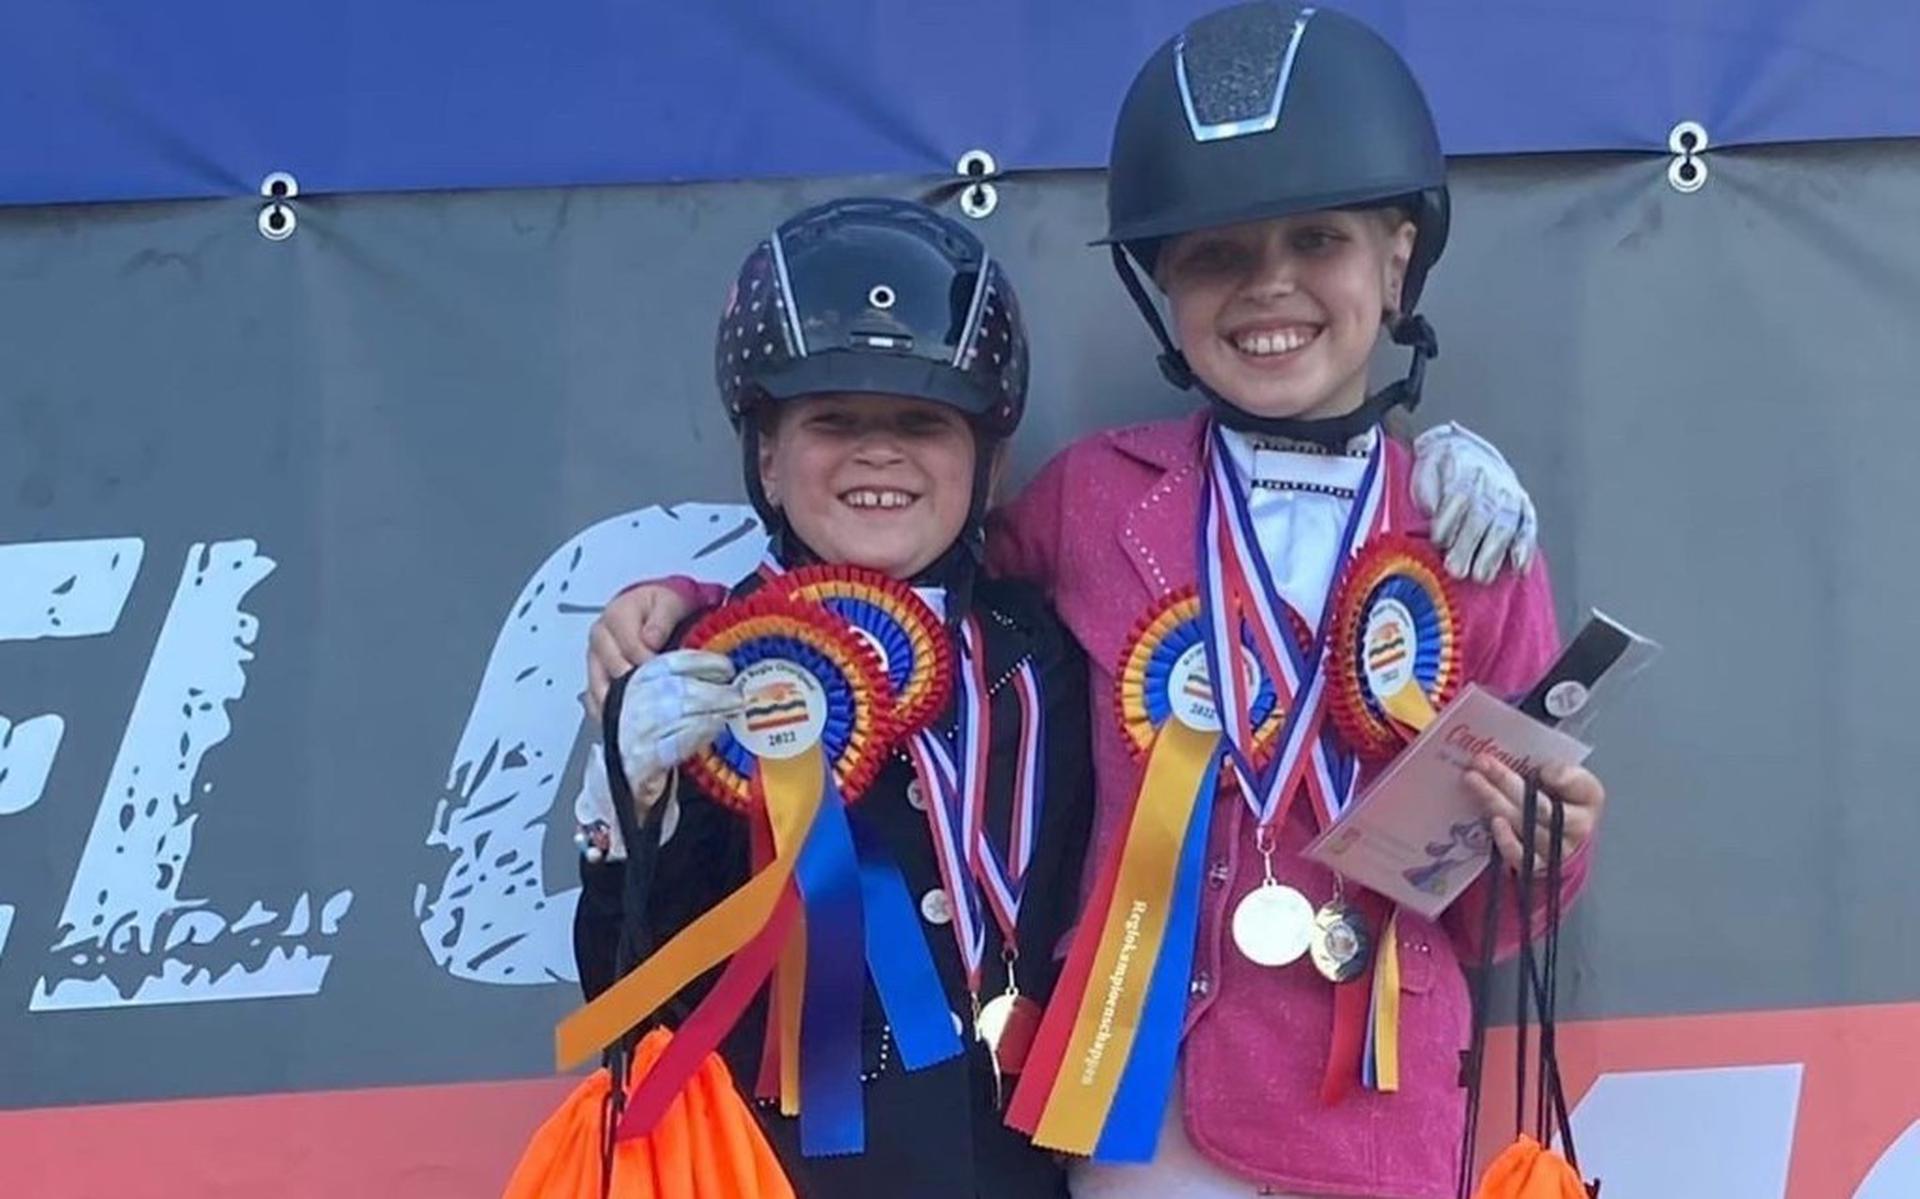 Paardenvriendinnnen Sara Jeukens en Lenthe van Dijk vallen in de prijzen tijdens het Overijssels Kampioenschap Ponyrijden. Lenthe werd kampioen in dressuur B1, Sara derde bij het springen AA. 